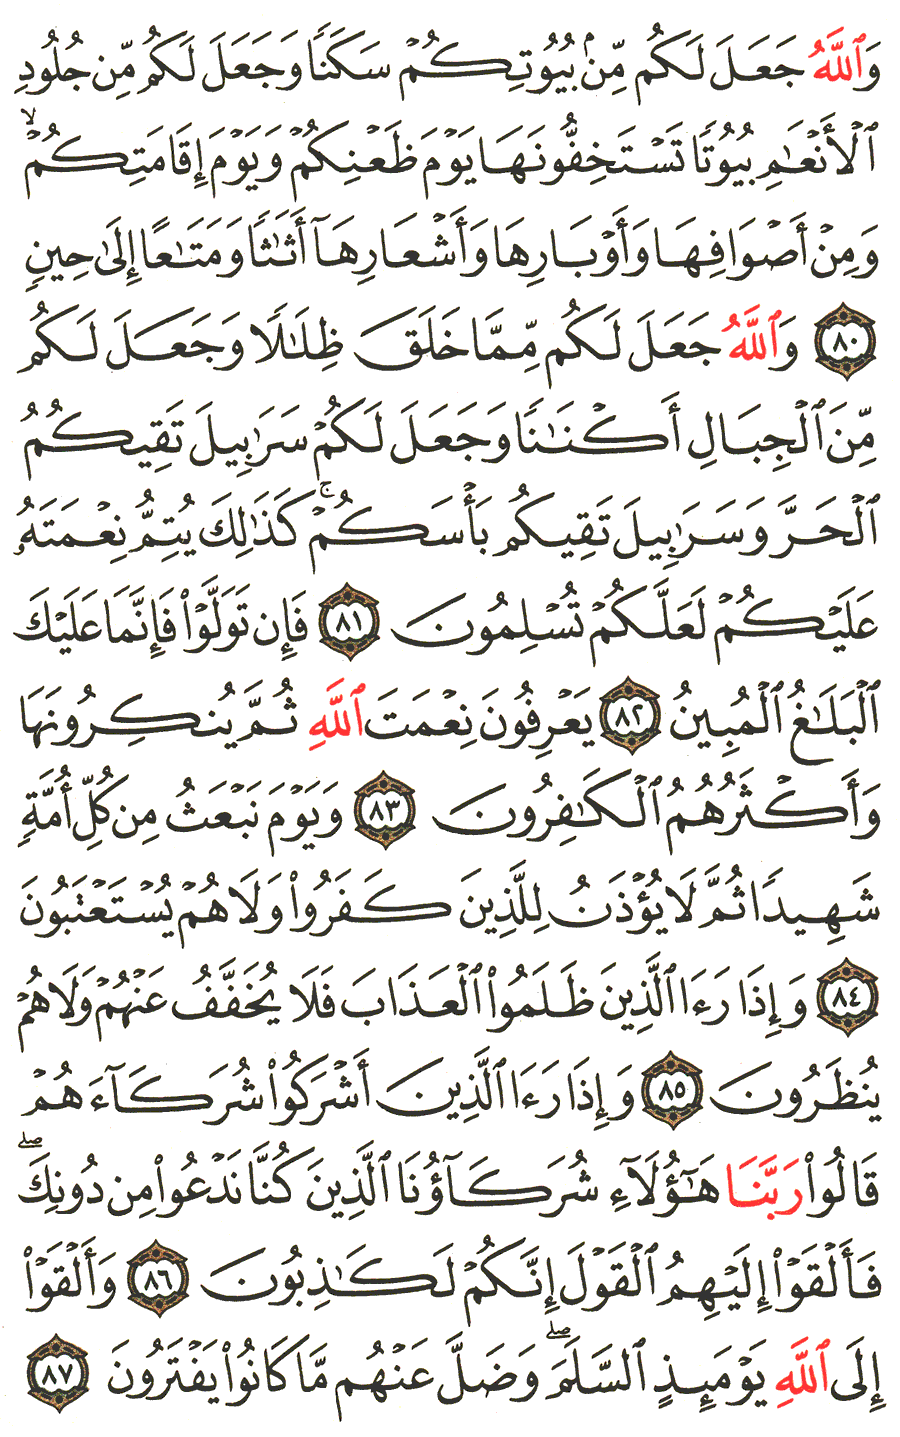 الصفحة 276 من القرآن الكريم